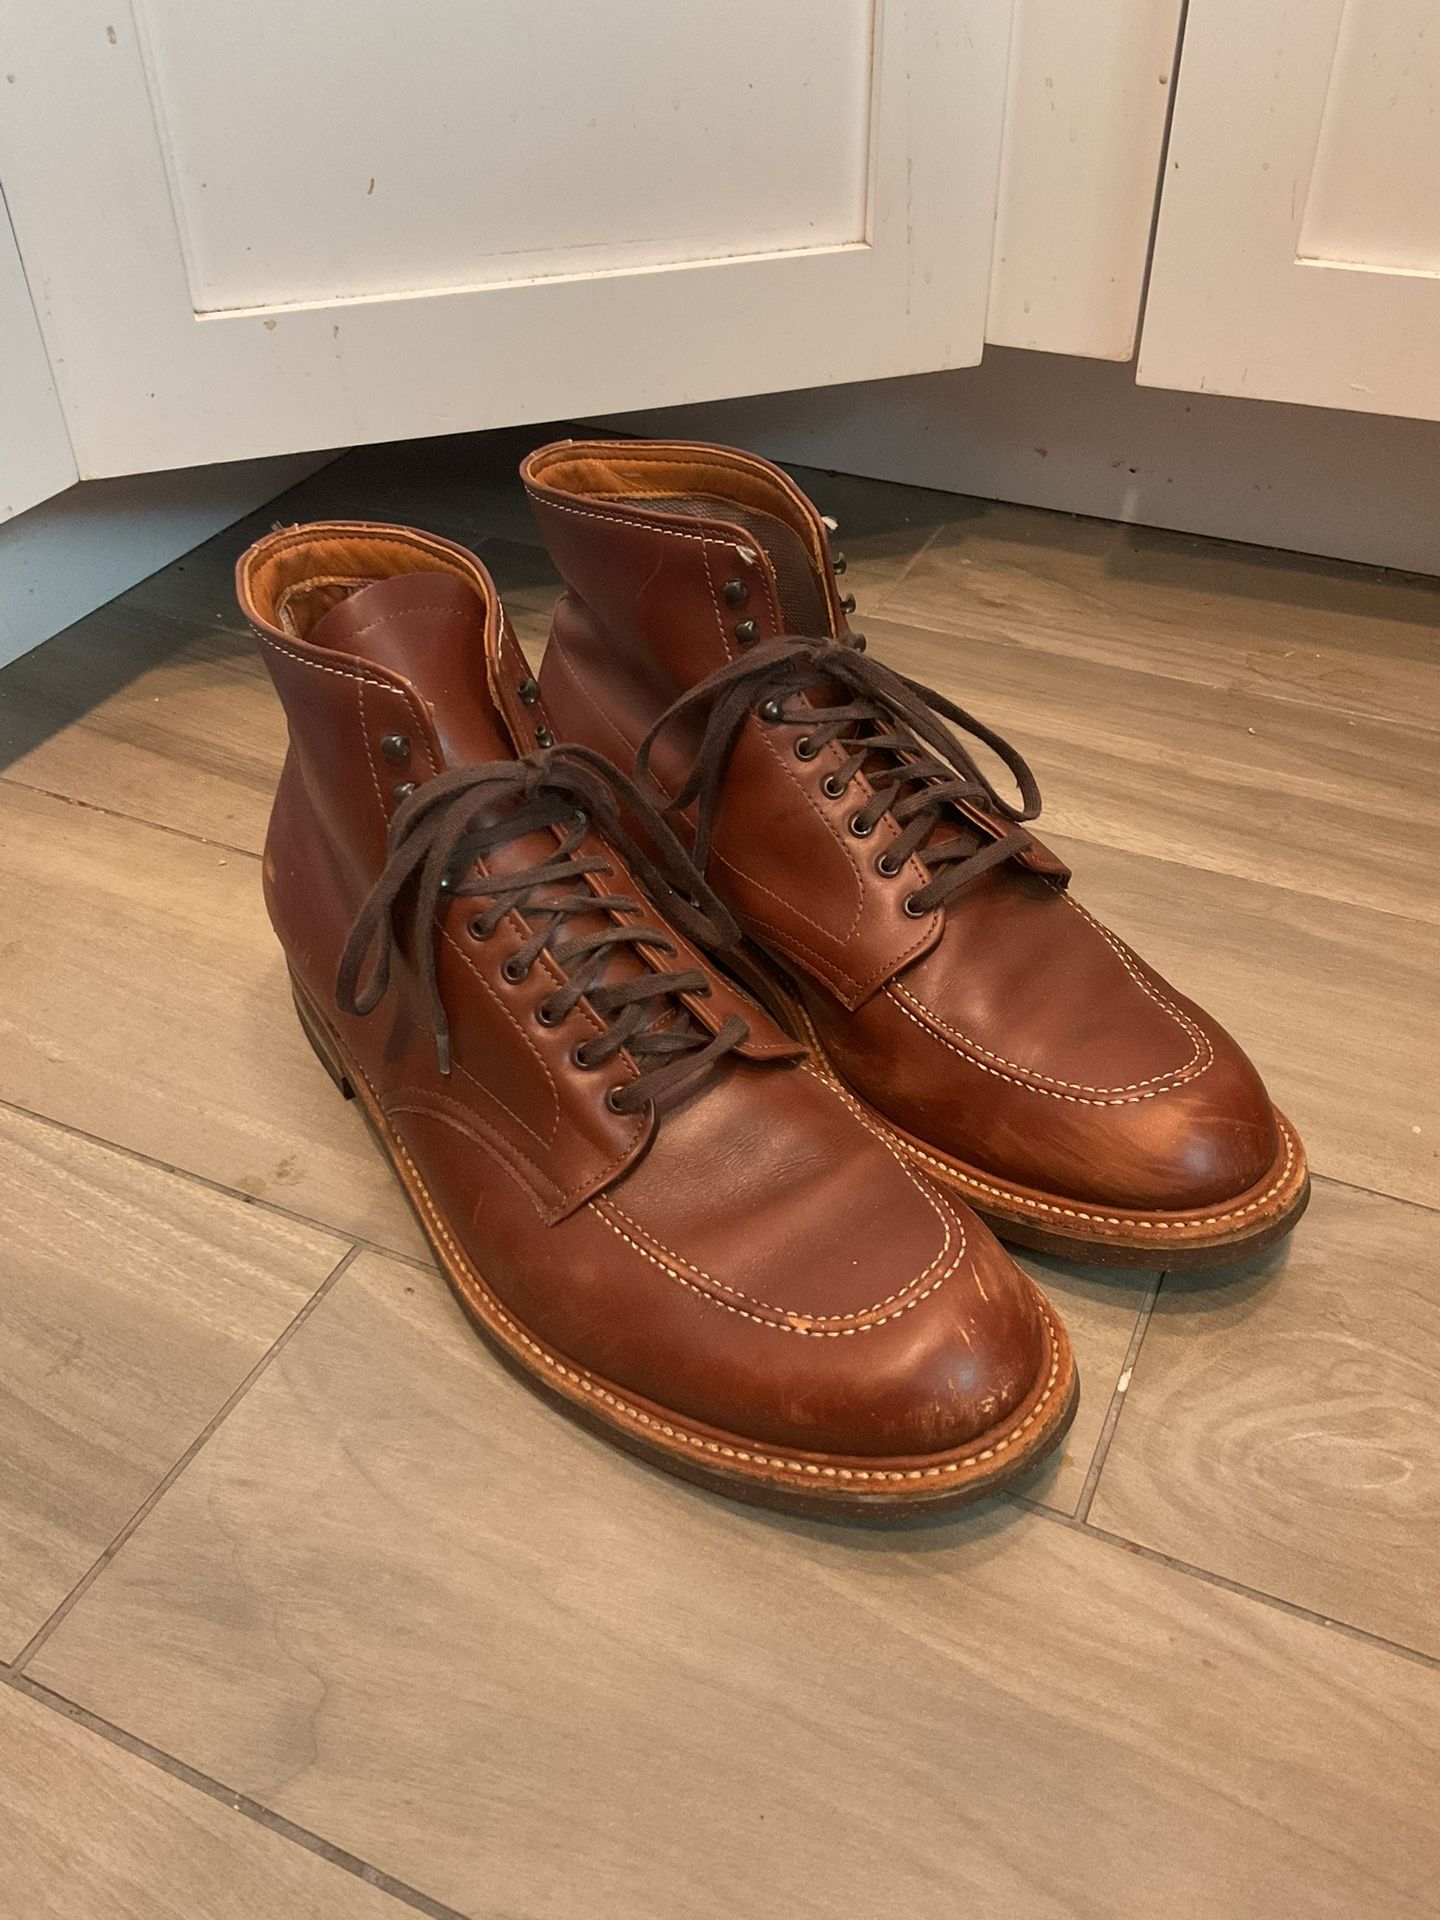 Alden Foot Balance Vintage Mocc Toe Brown Leather Men’s Work Boots sz 12EE